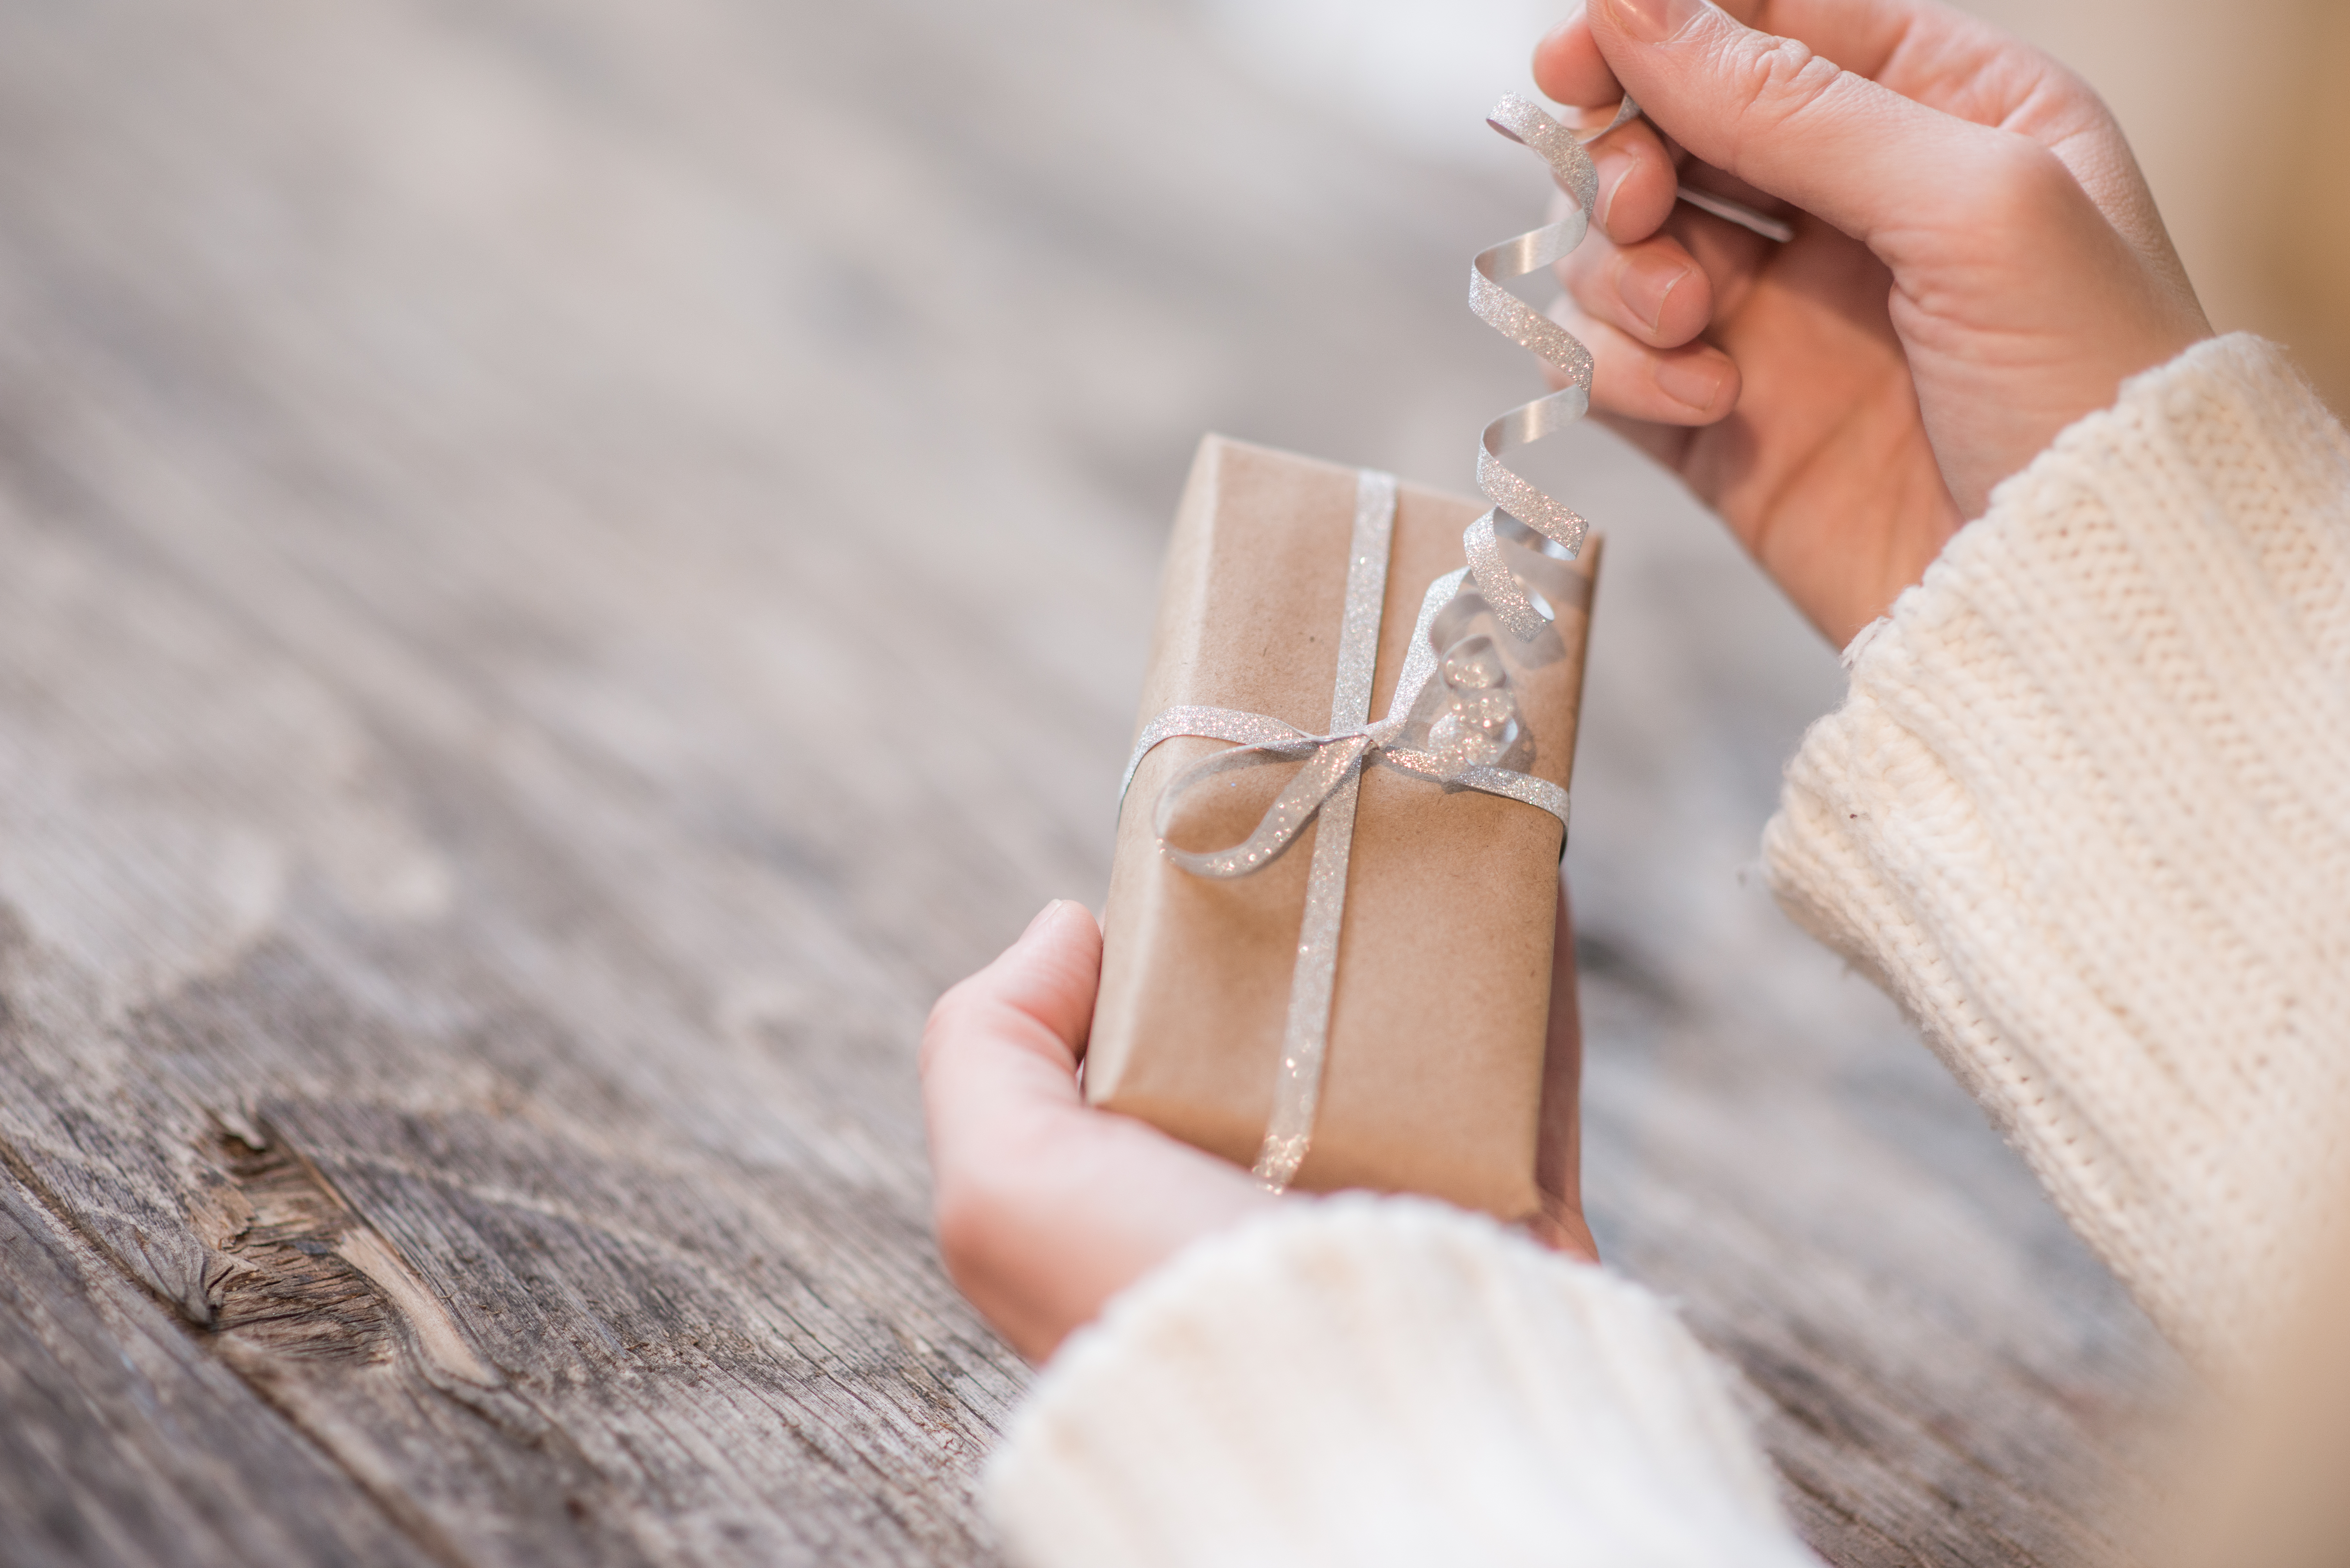 Eine Frau, die ein Geschenk öffnet | Quelle: Shutterstock